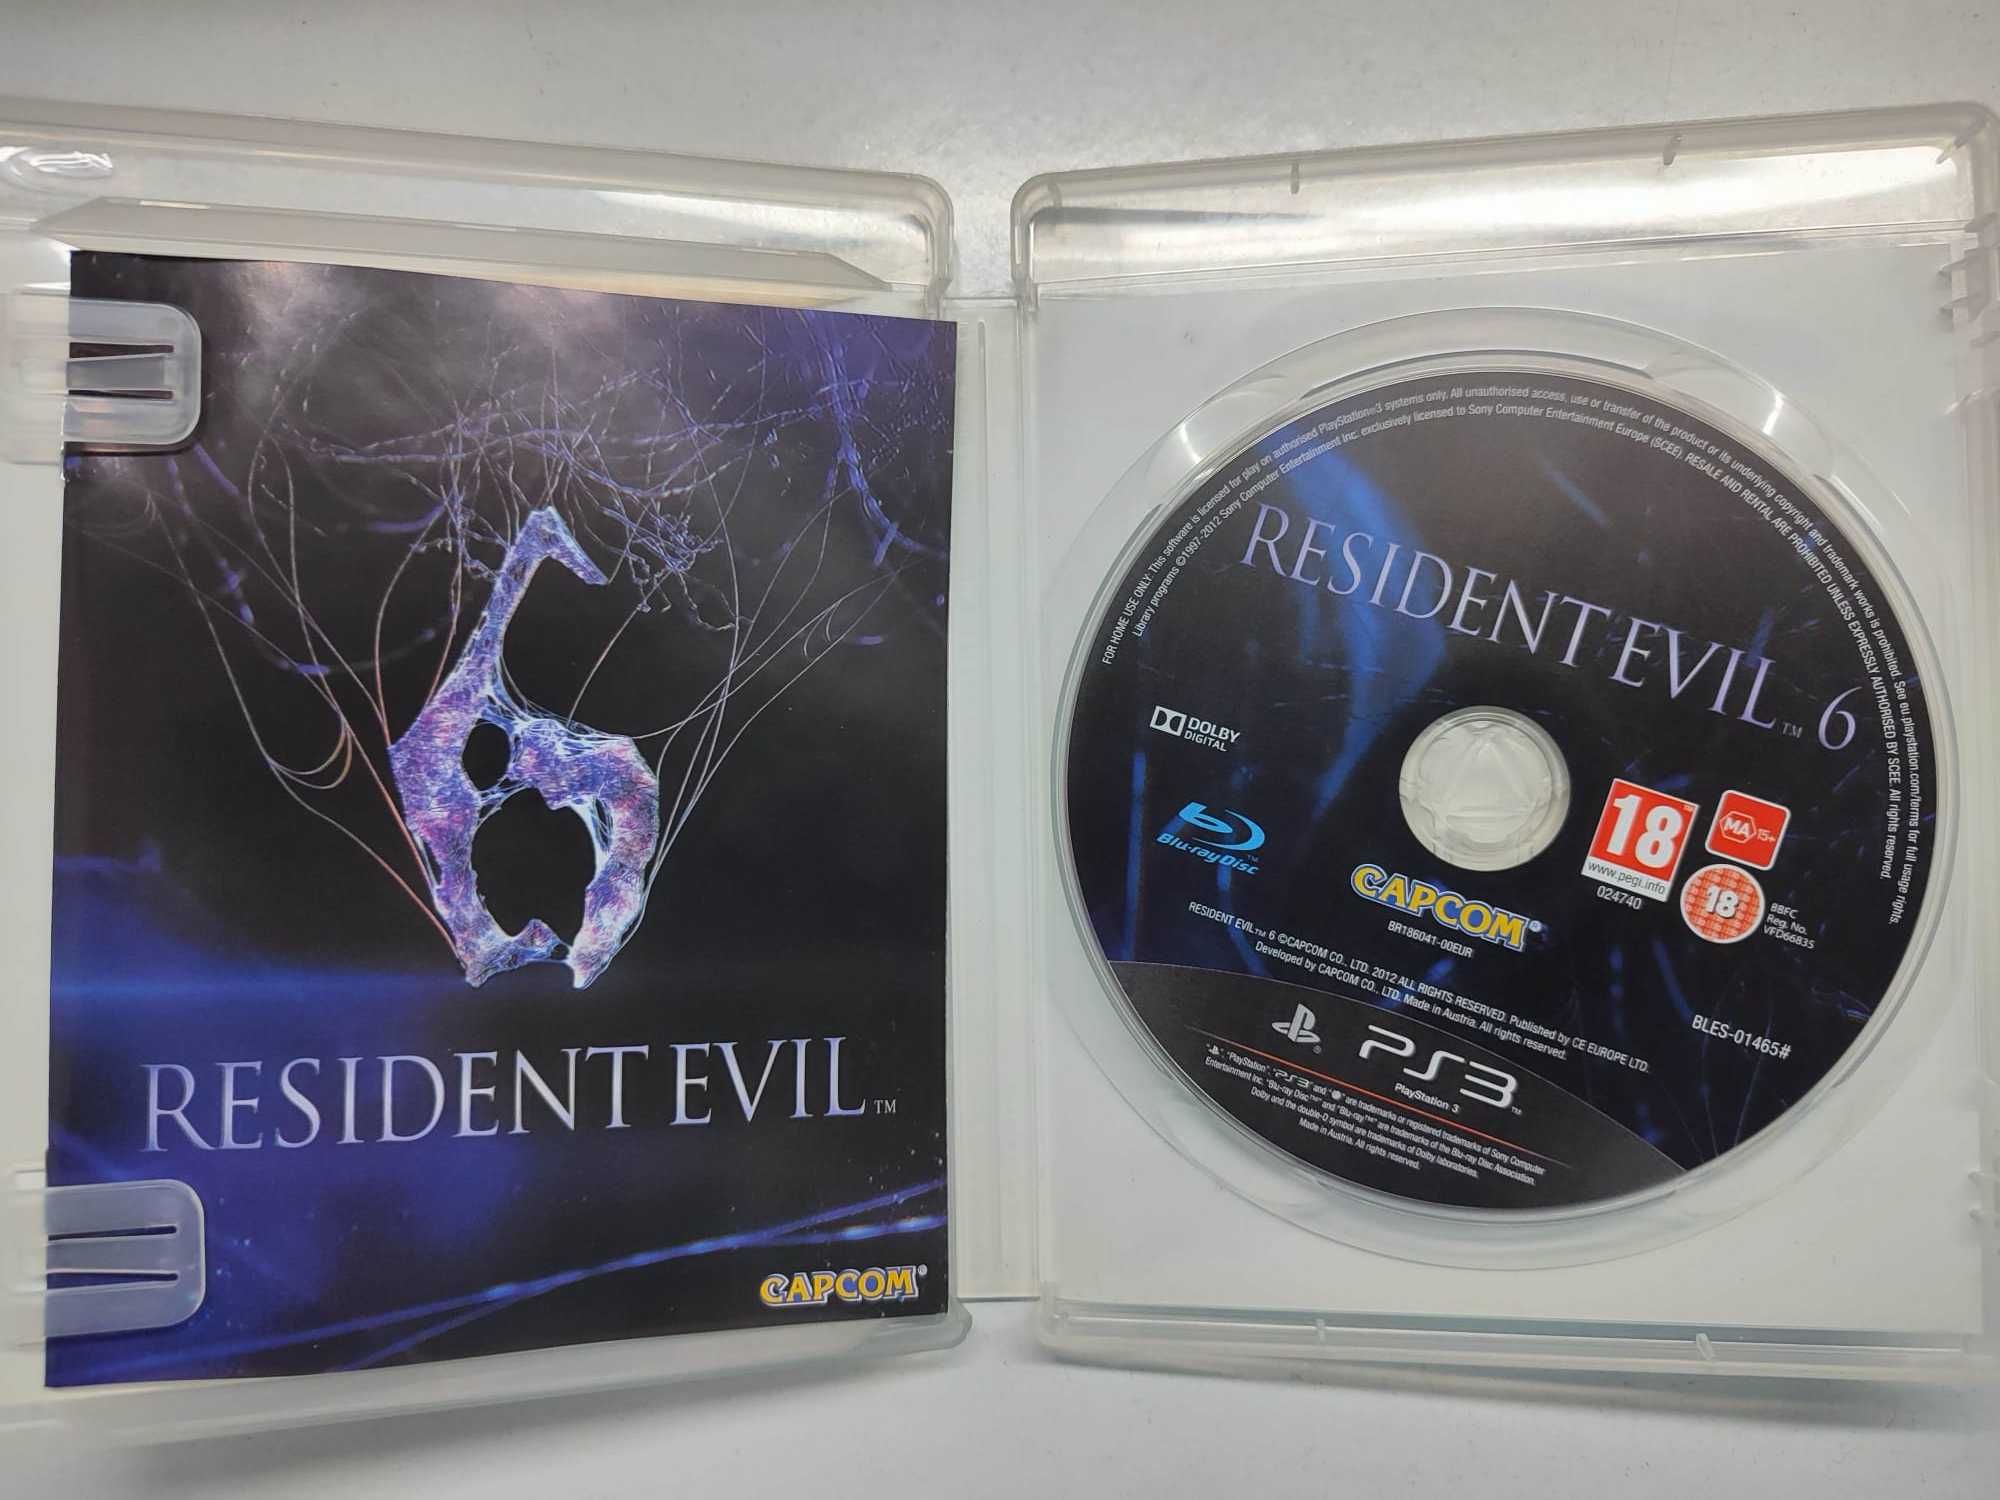 PS3 - Resident Evil 6